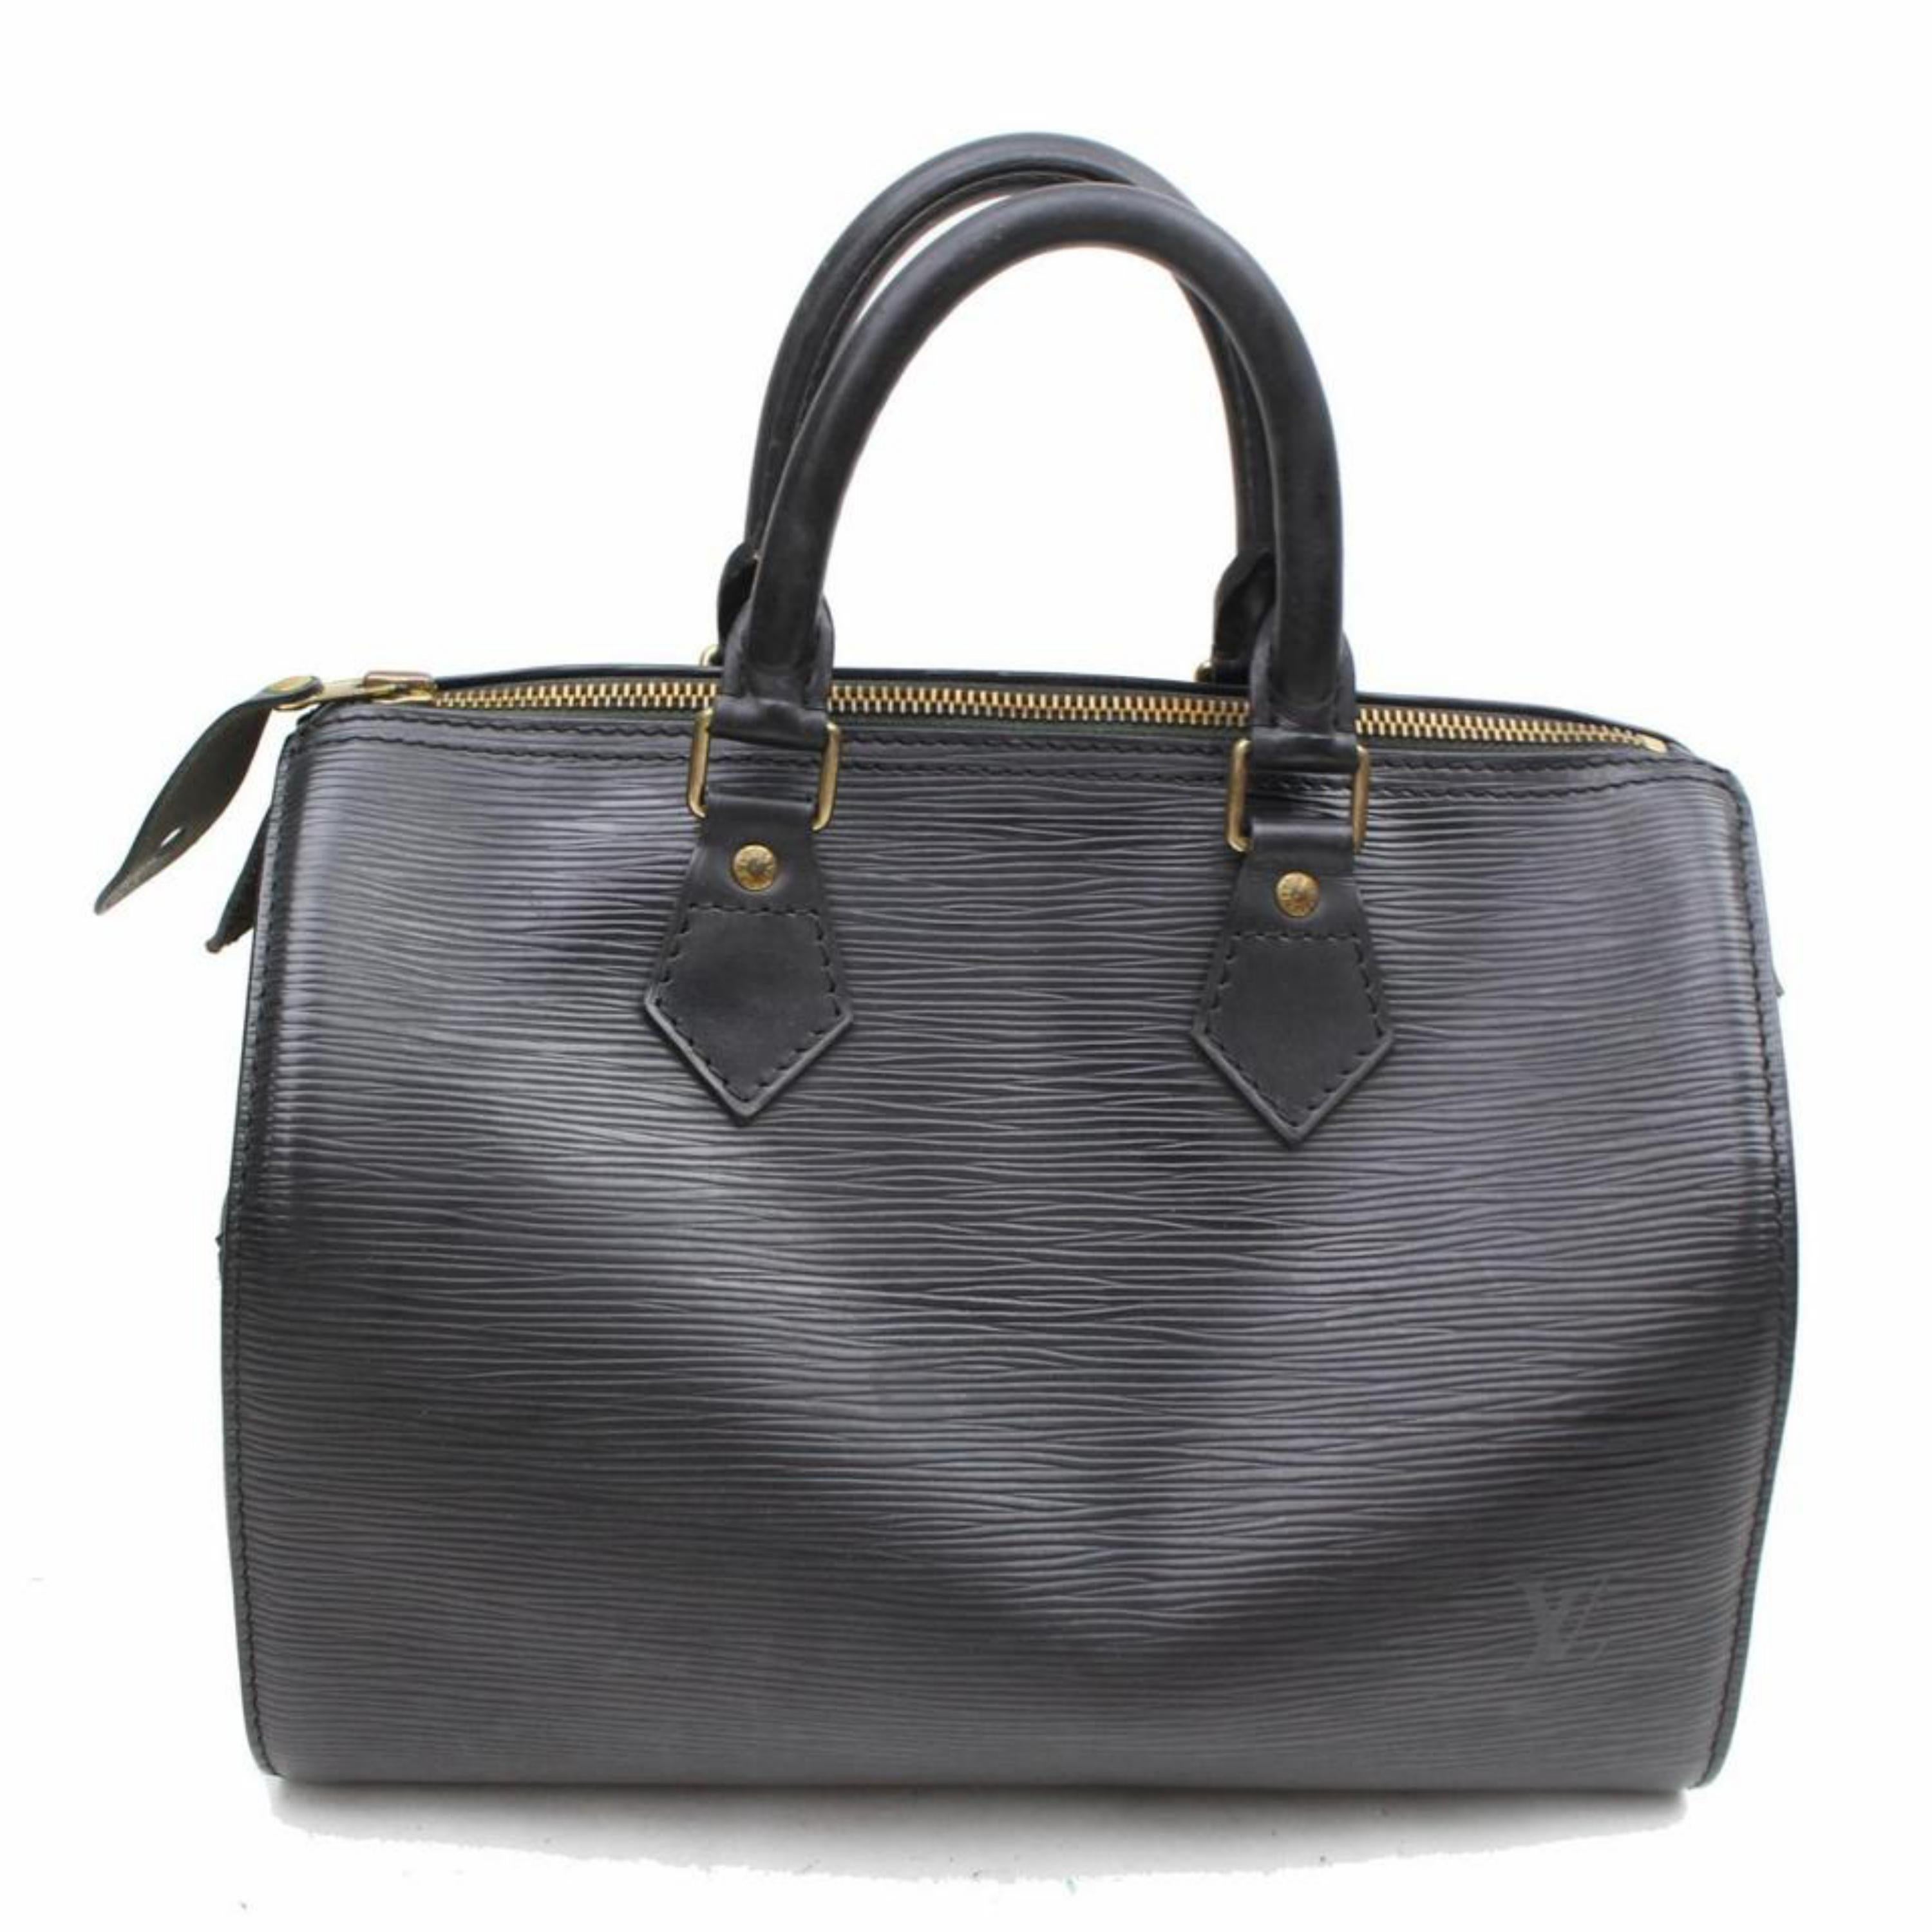 Louis Vuitton Speedy Noir 25 869188 Black Leather Satchel For Sale 5